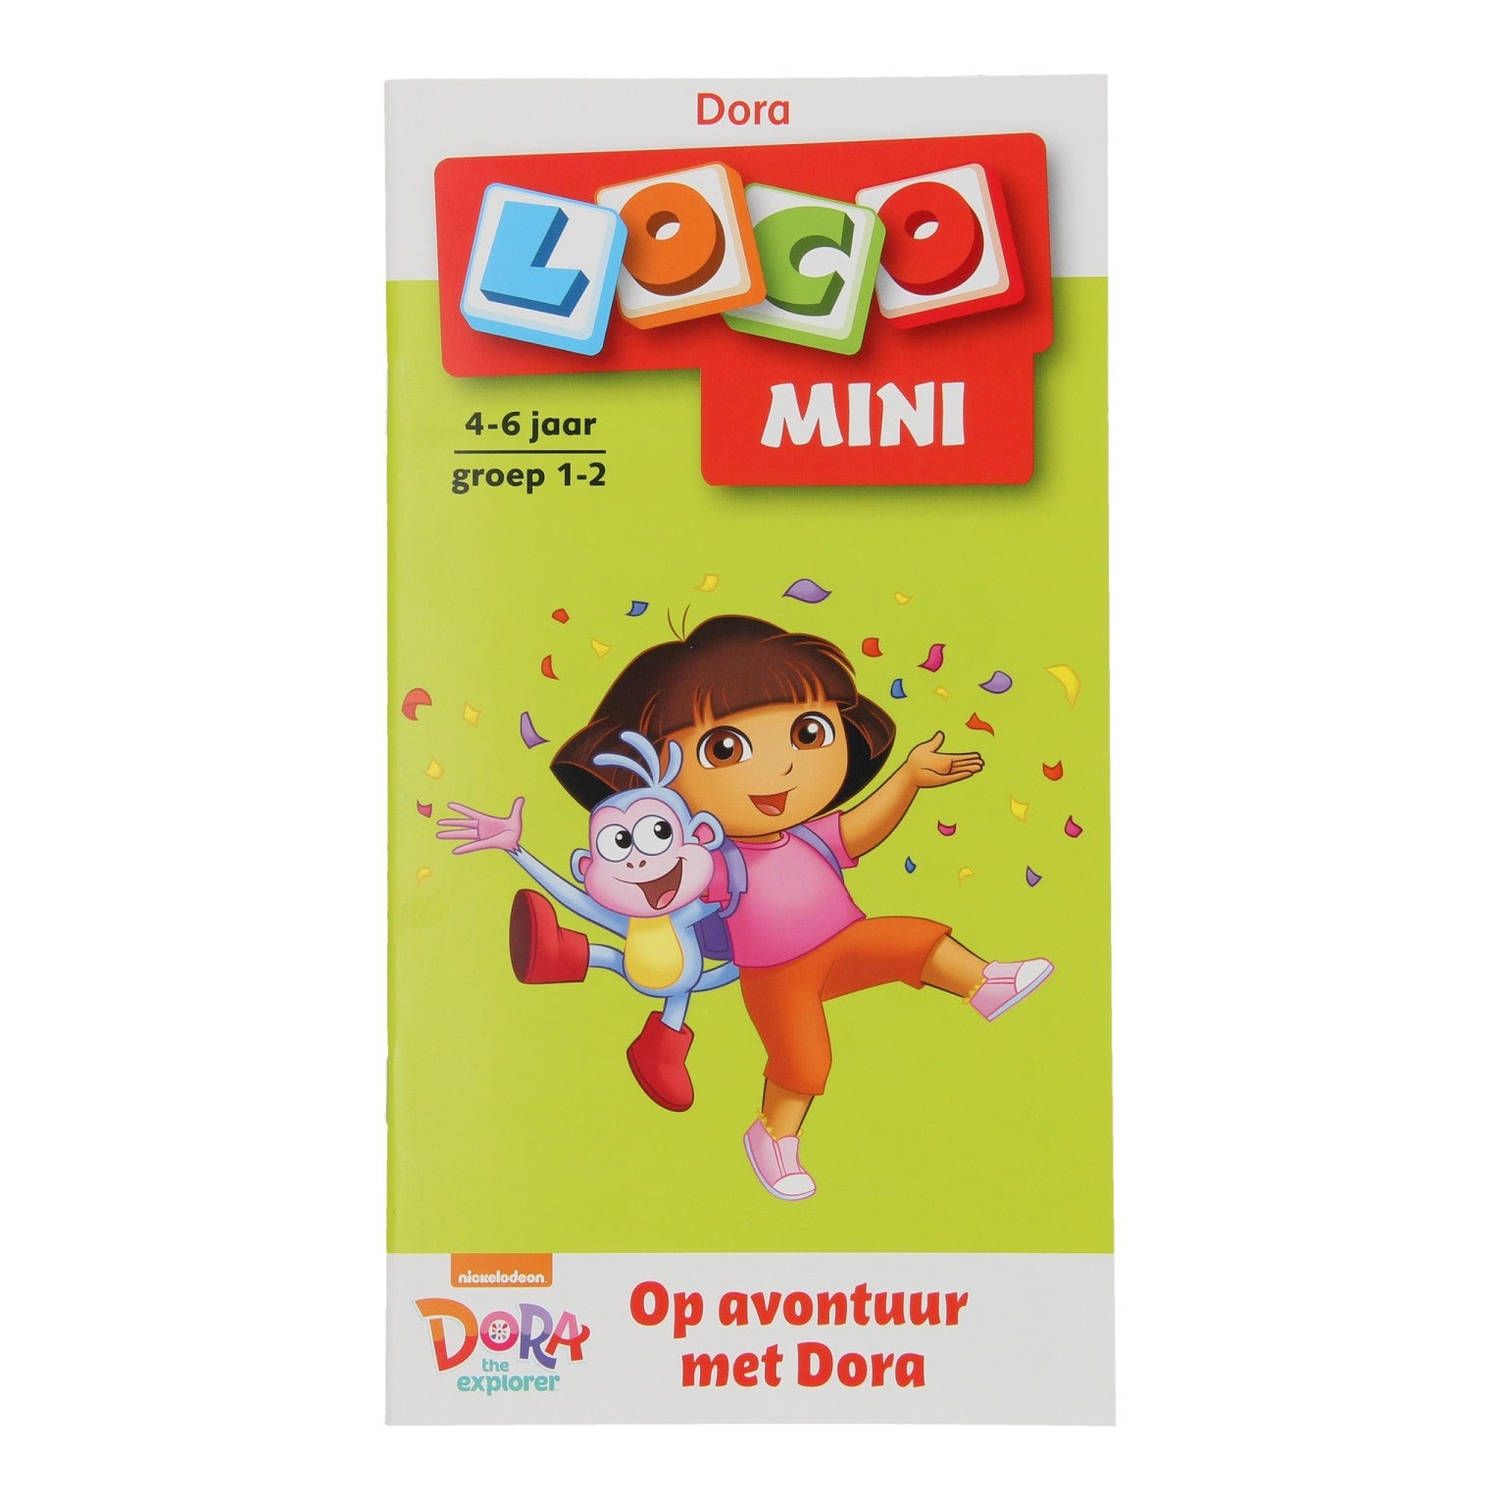 Loco Mini Op avontuur met Dora Groep 1-2 (4-6 jr.)